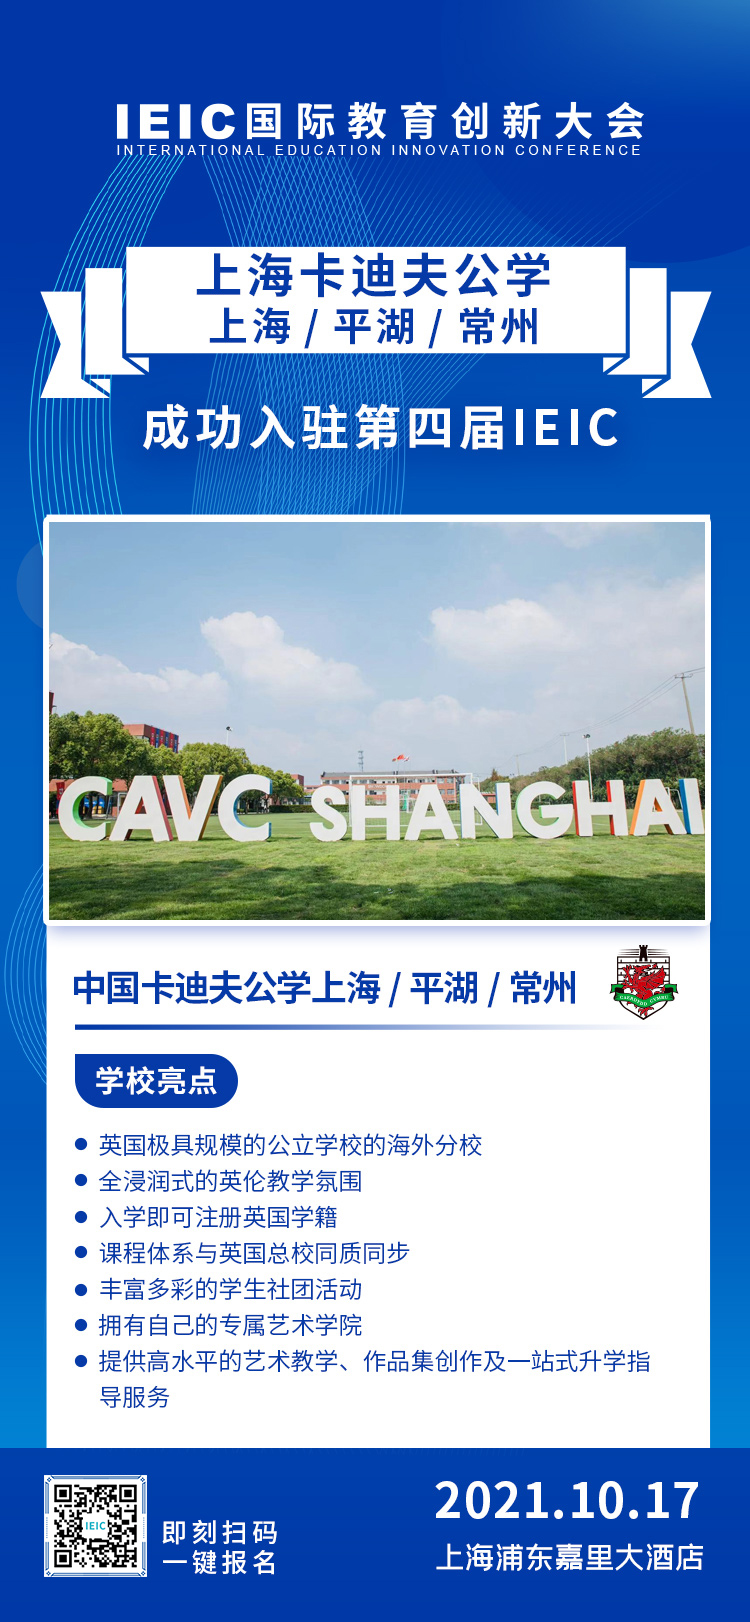 中国卡迪夫公学上海/平湖/常州|入驻参展2021年远播第四届IEIC国际教育创新大会